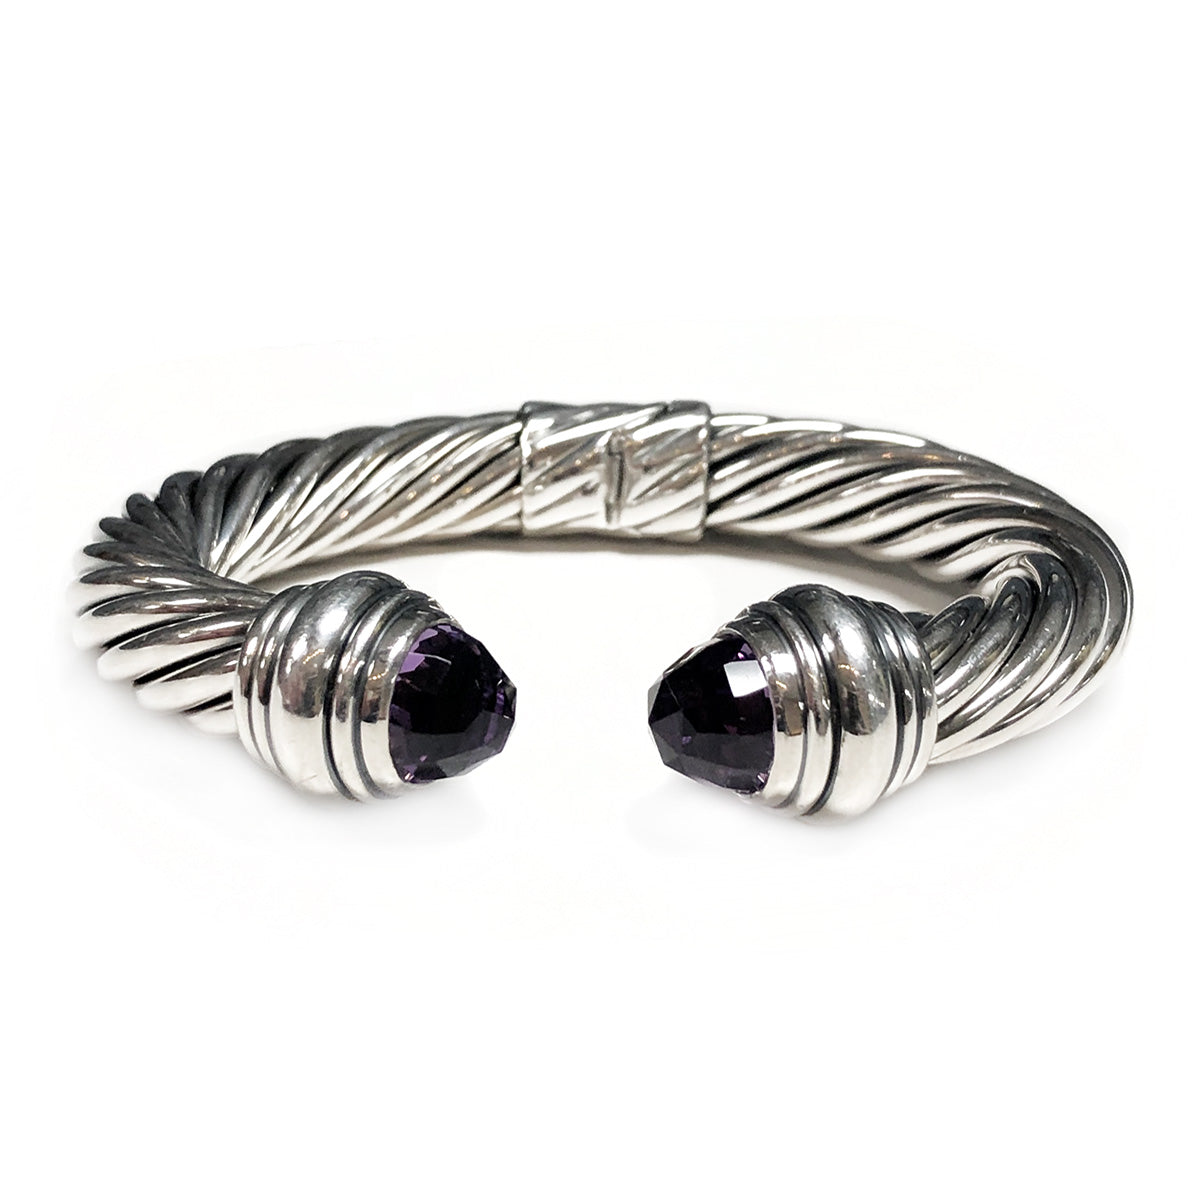 David Yurman 5mm Light Silver Aluminum Renaissance Cable Bracelet | Cable  bracelets, Bracelet shops, Silver